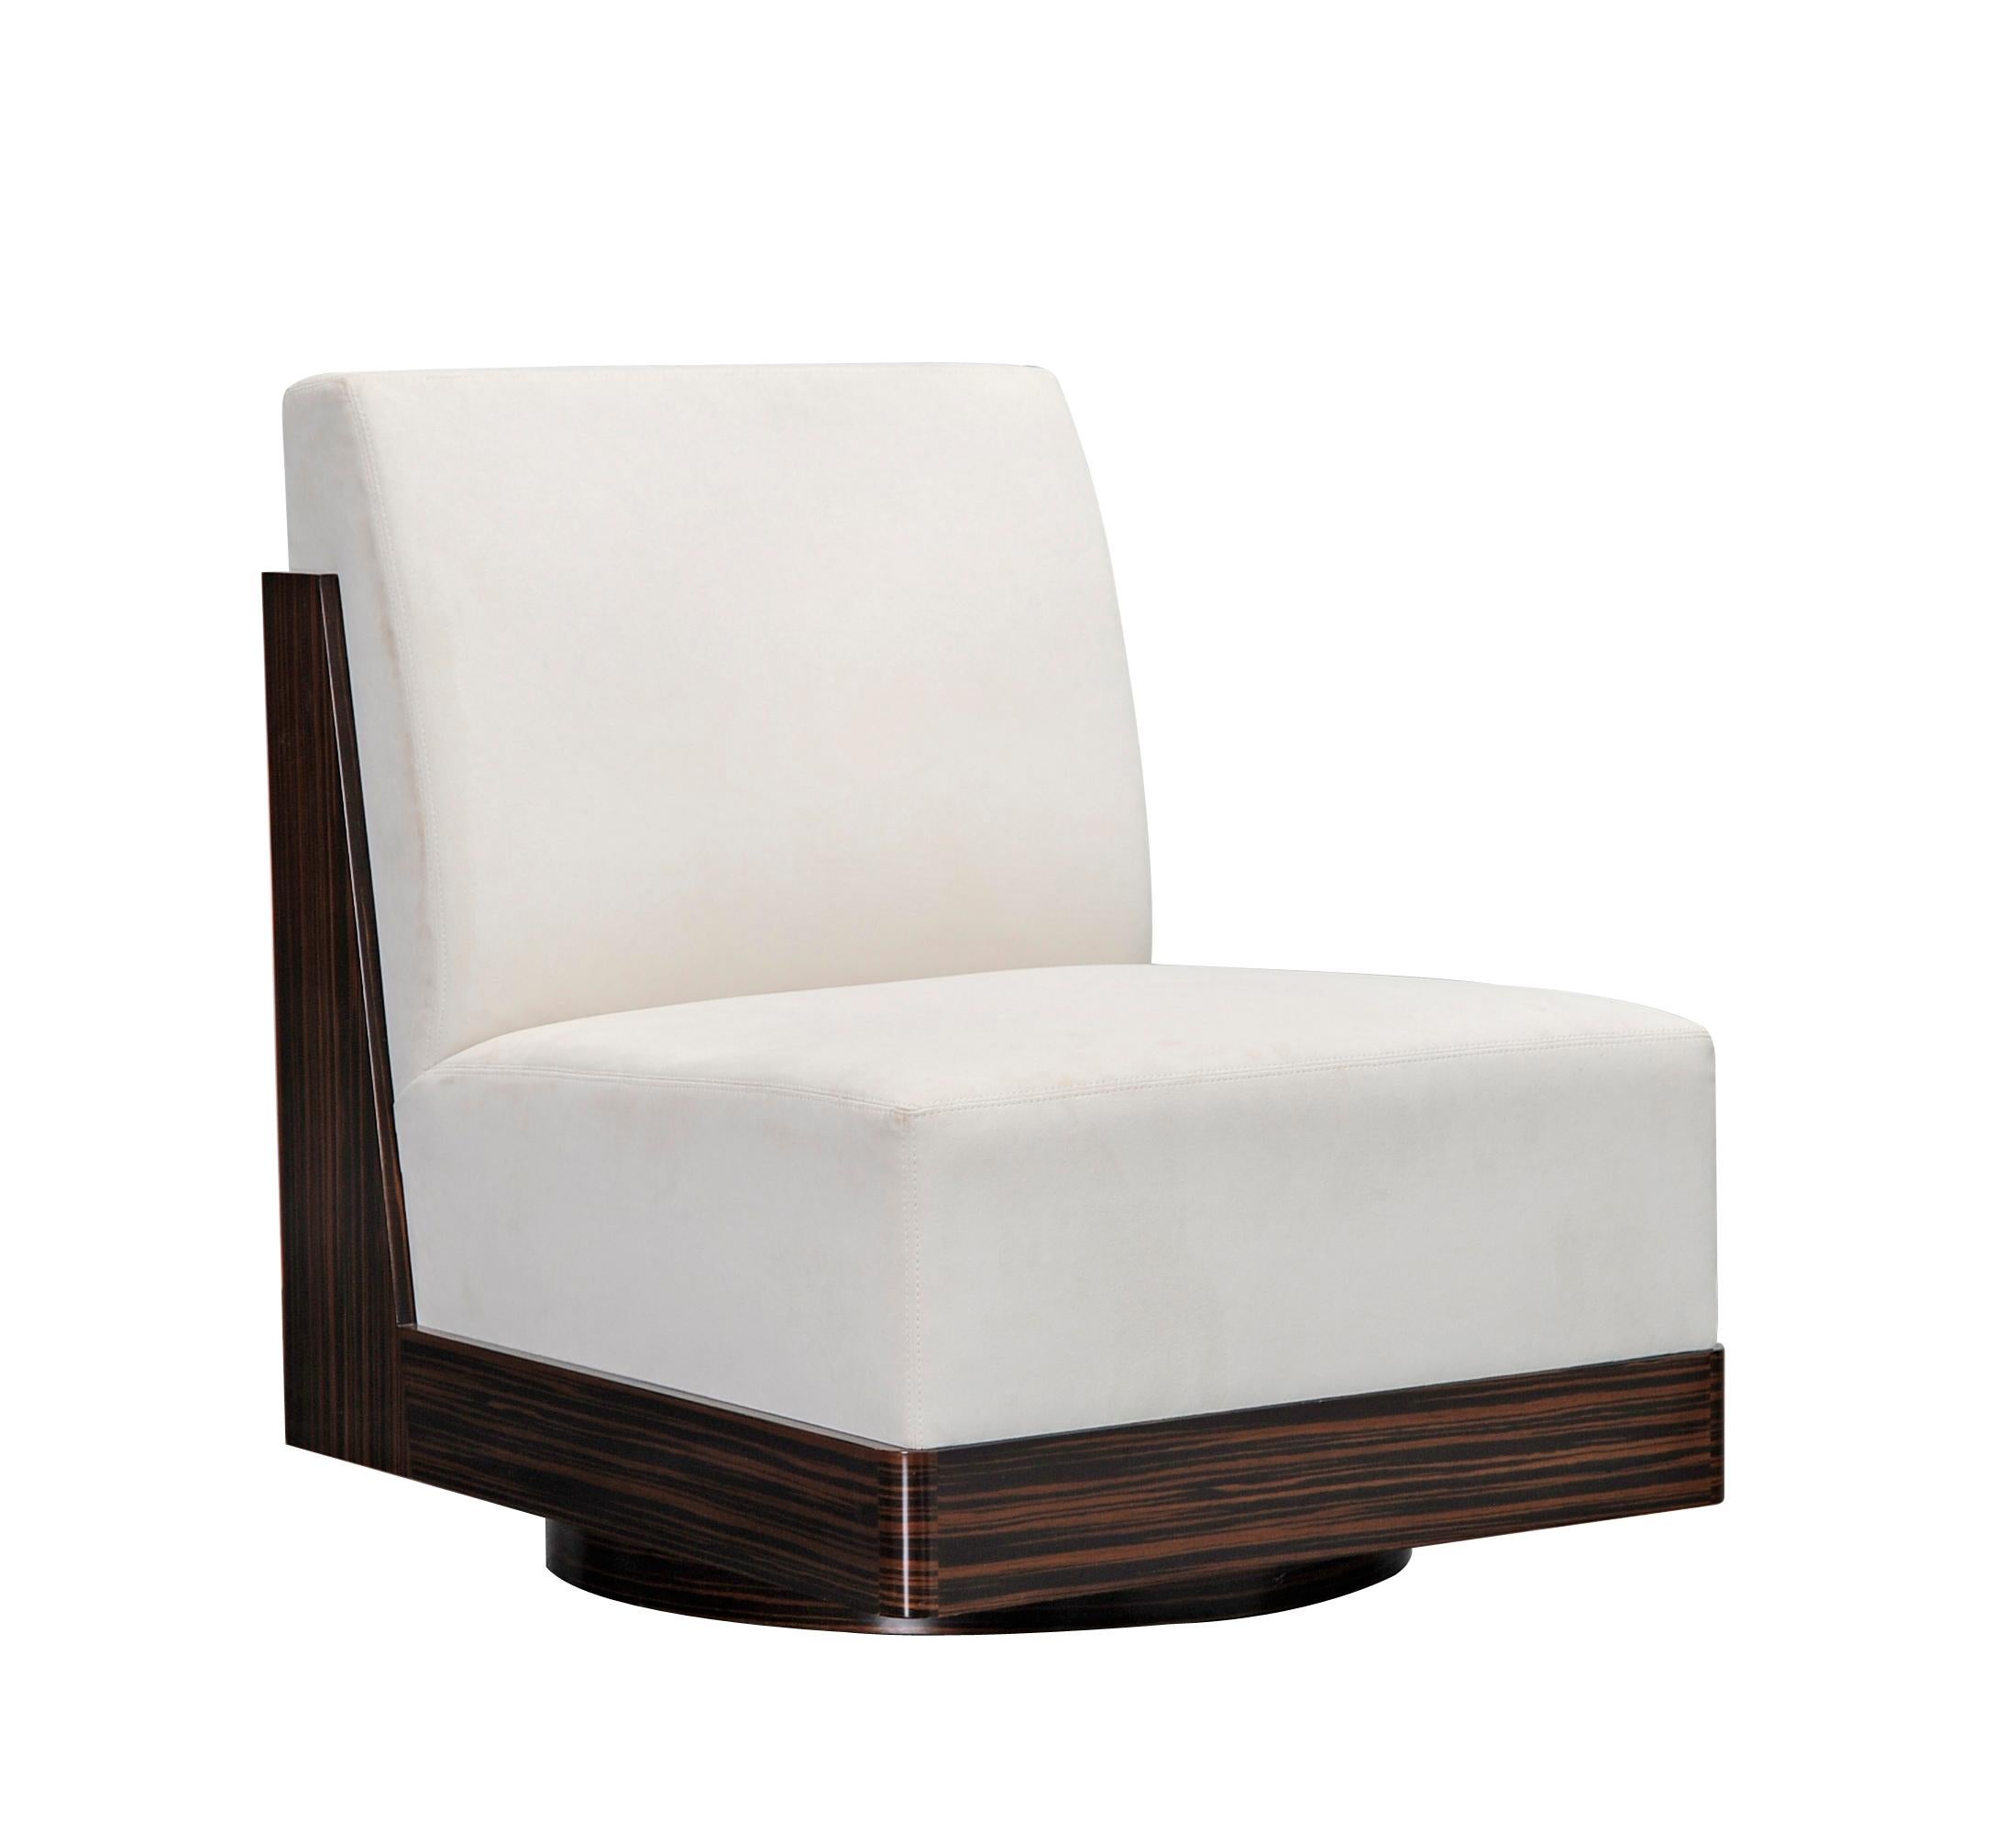 N° CH-005

Le fauteuil Cubist Curve Lounge Chair est fabriqué de manière traditionnelle avec un système de ressorts à huit voies liés à la main, puis le duvet et la mousse de la plus haute qualité sont superposés pour créer une résilience qui permet